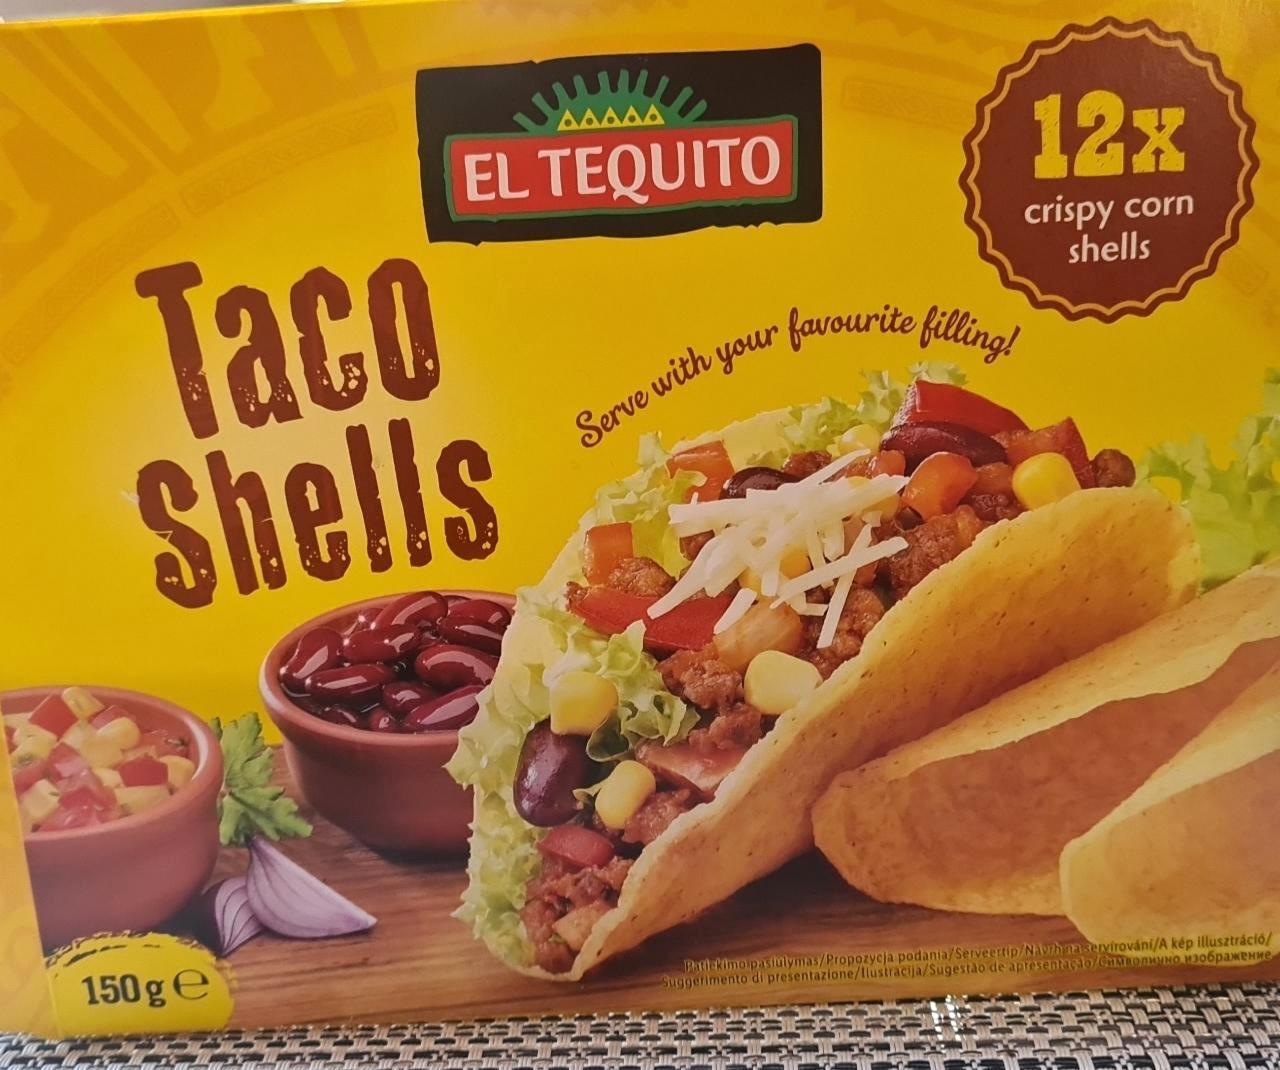 Taco Schells Tequito - kJ El és kalória, tápértékek